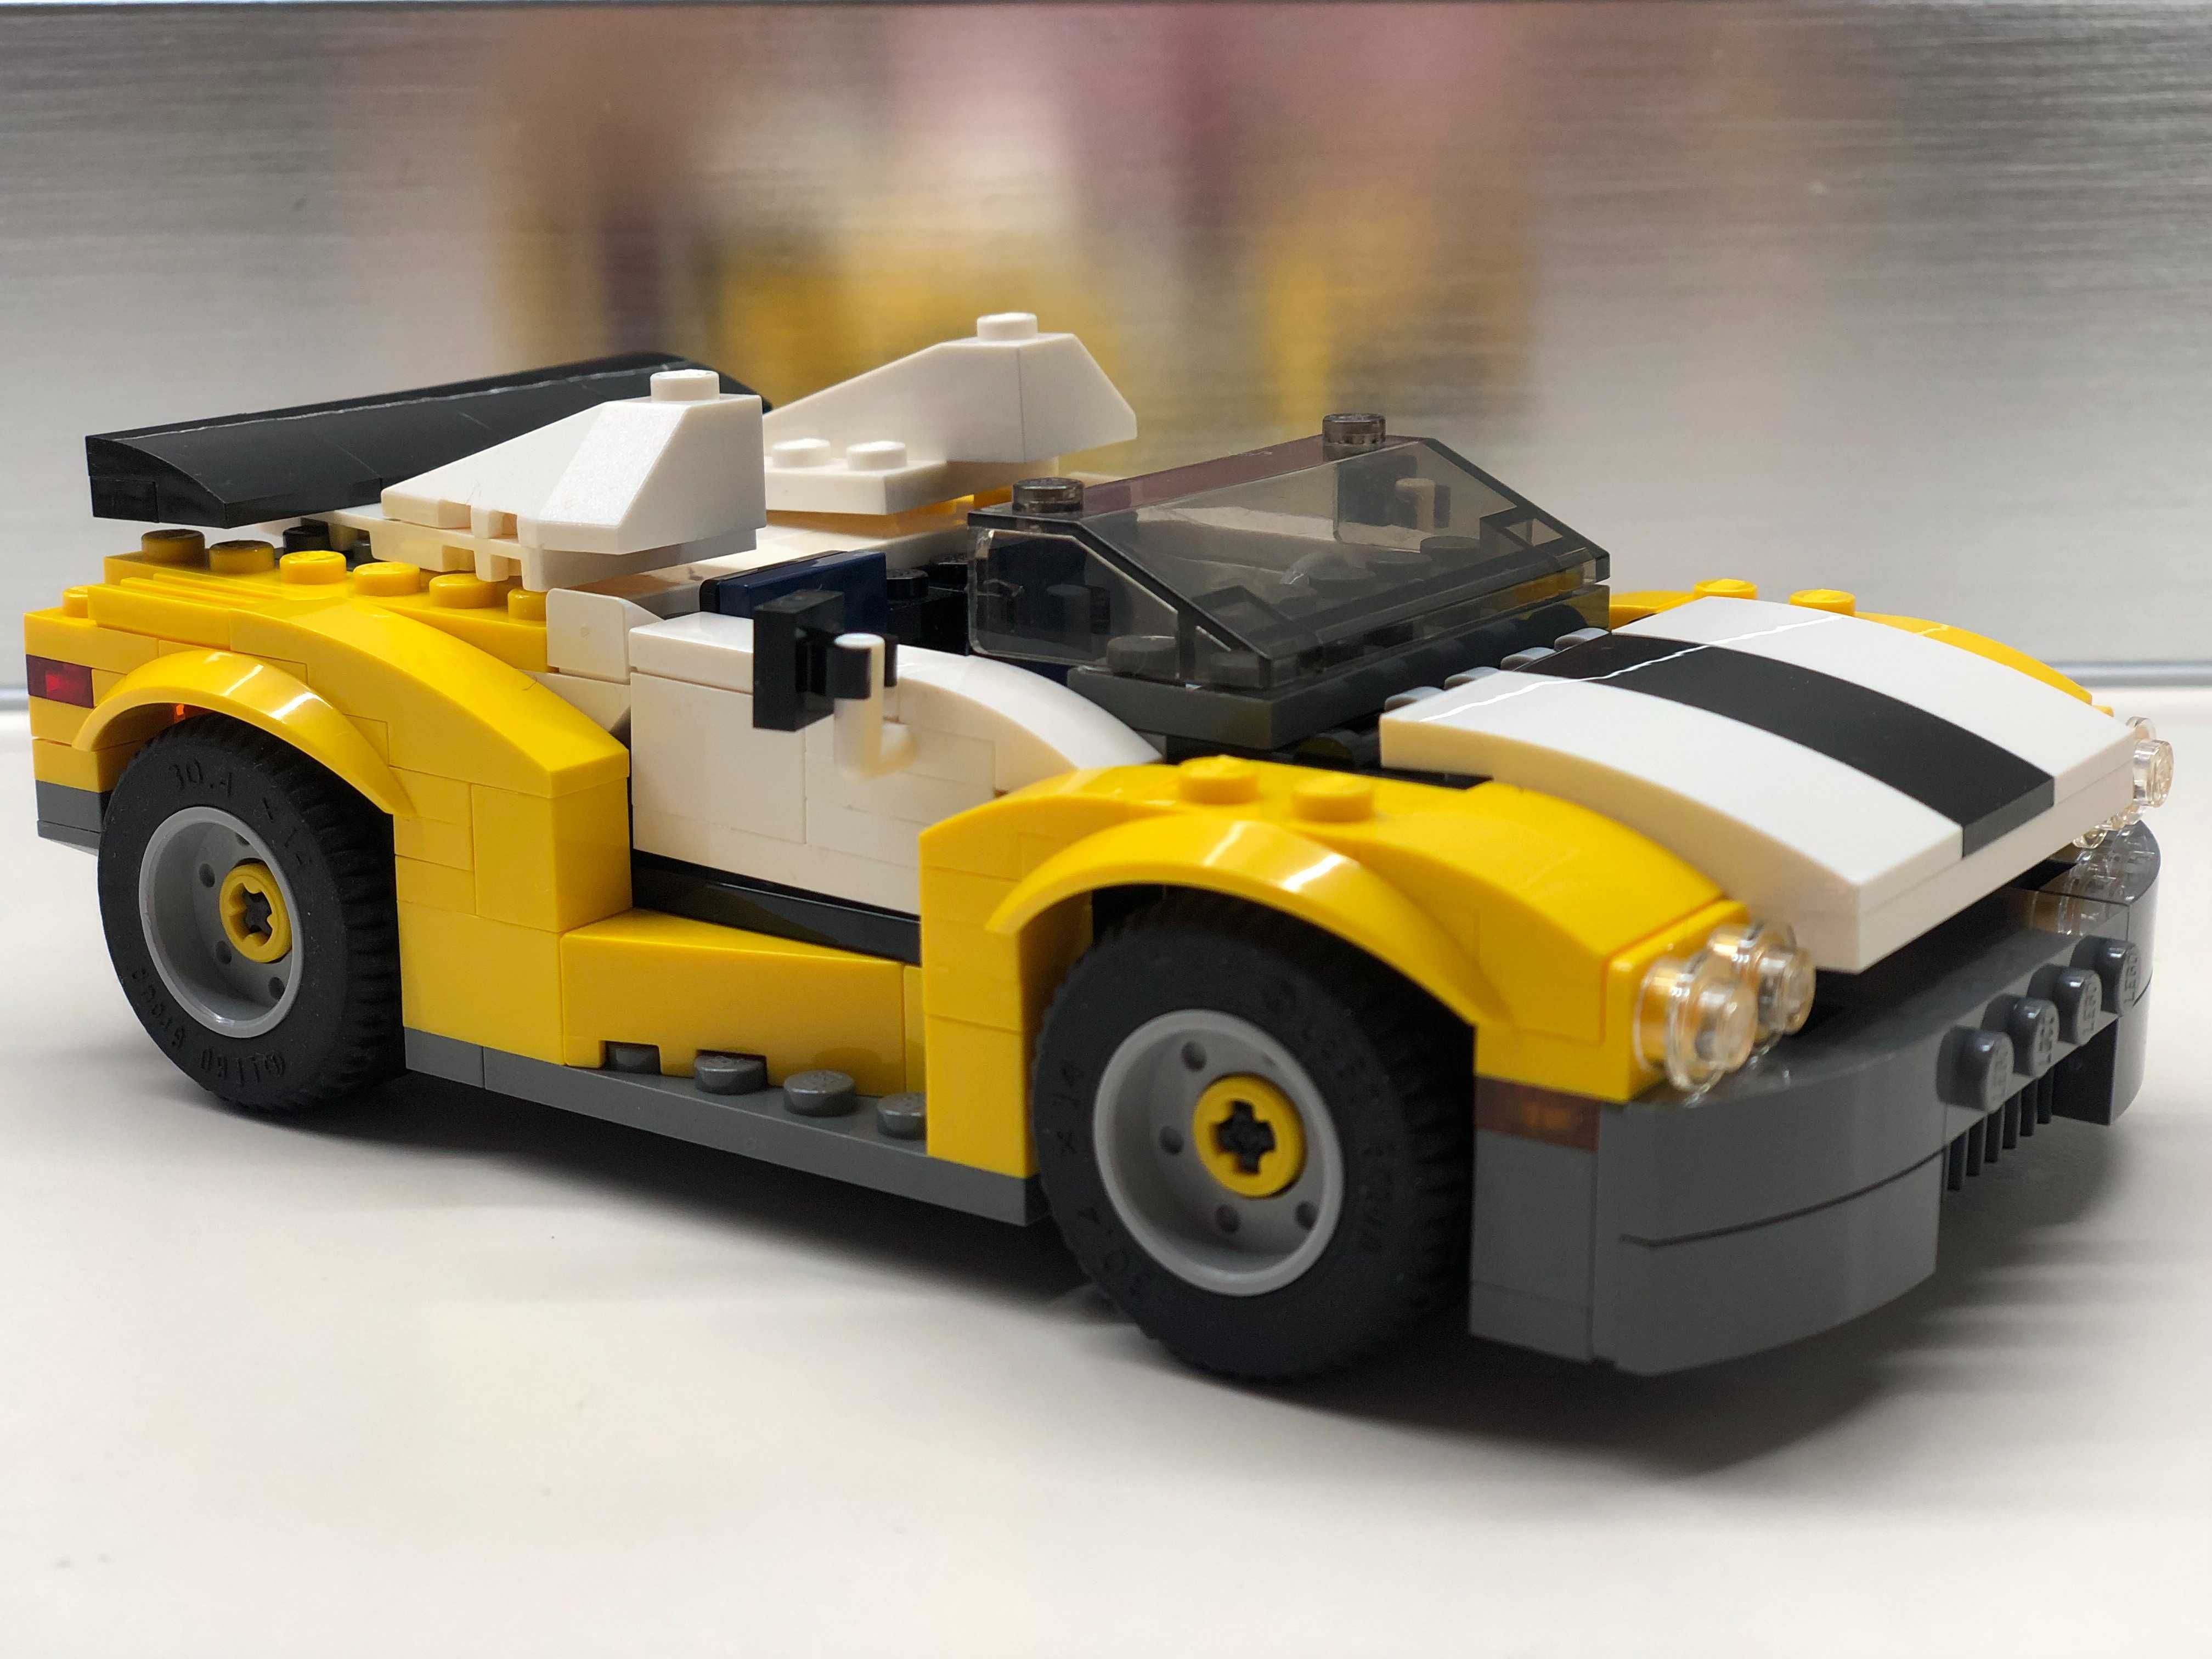 Kompletny zestaw LEGO Creator 3w1, pudełko, instrukcja